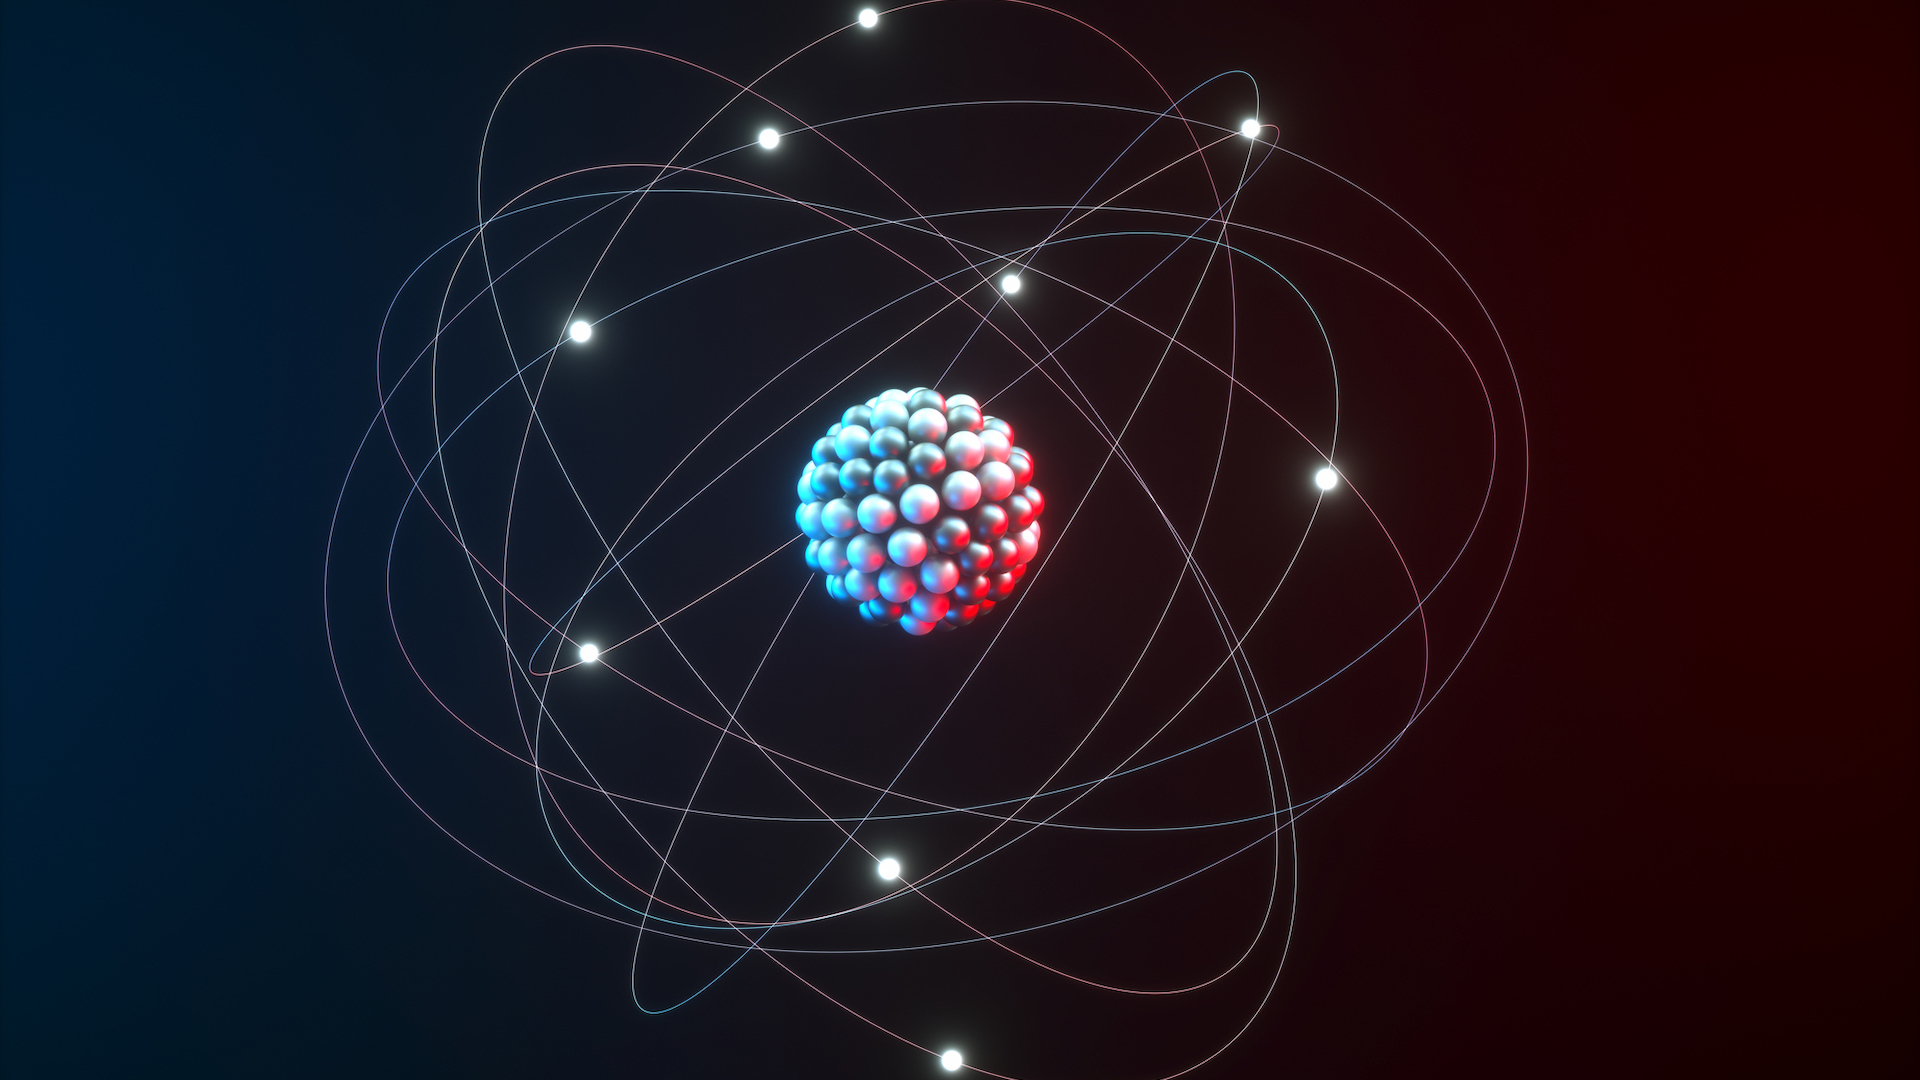 An artist's rendering of an atom